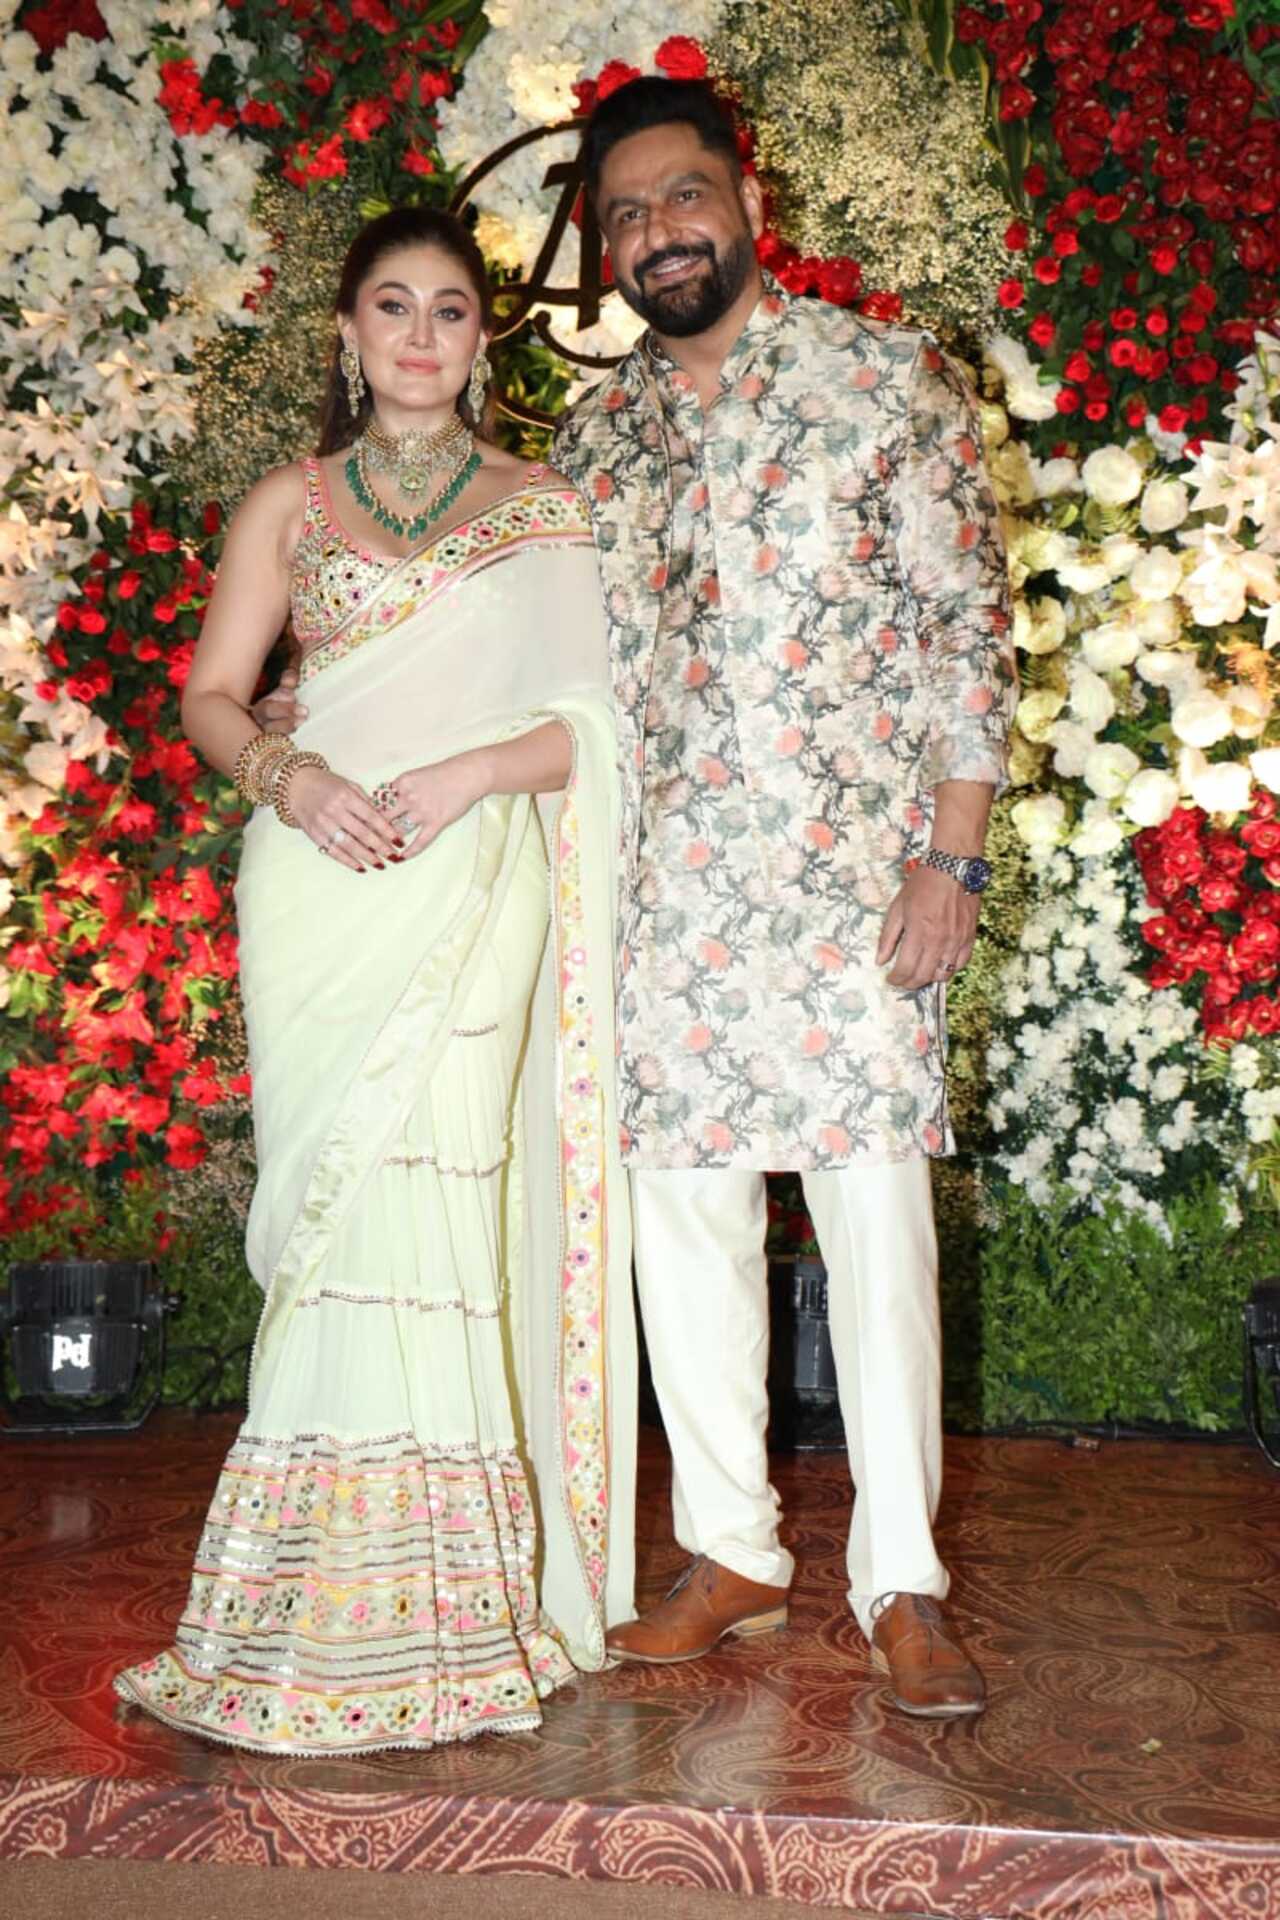 Shefali Jariwala and Parag Tyagi pose on the red carpet